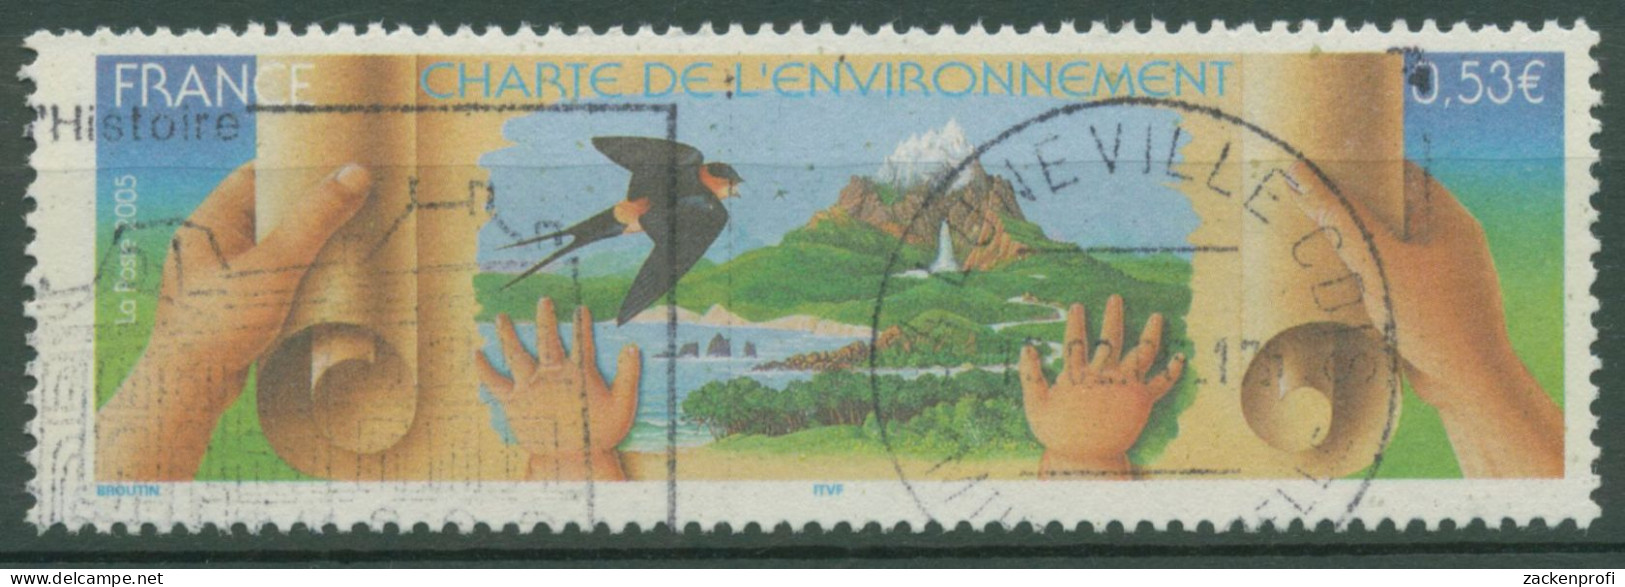 Frankreich 2005 Umweltschutz-Charta 3955 Gestempelt - Used Stamps